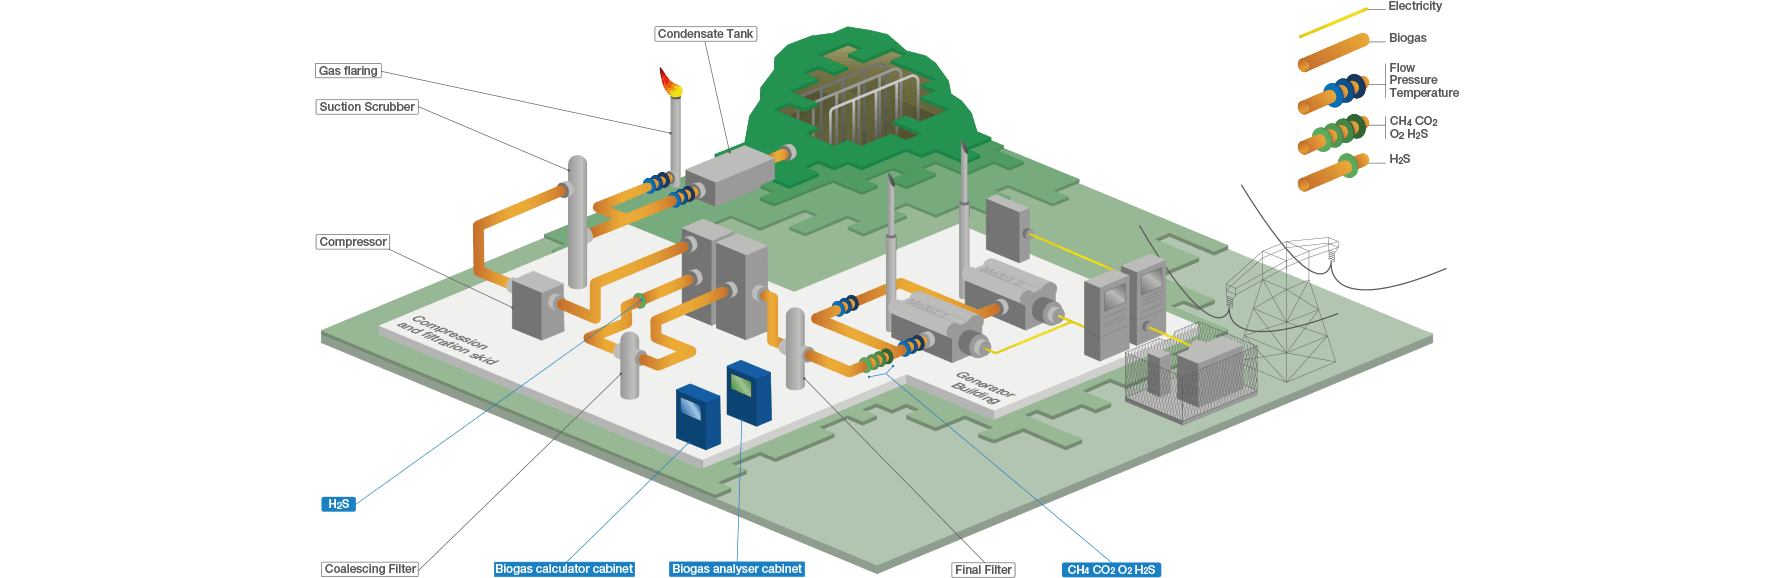 Biogas-Messgeräte müssen konform sein - schema 